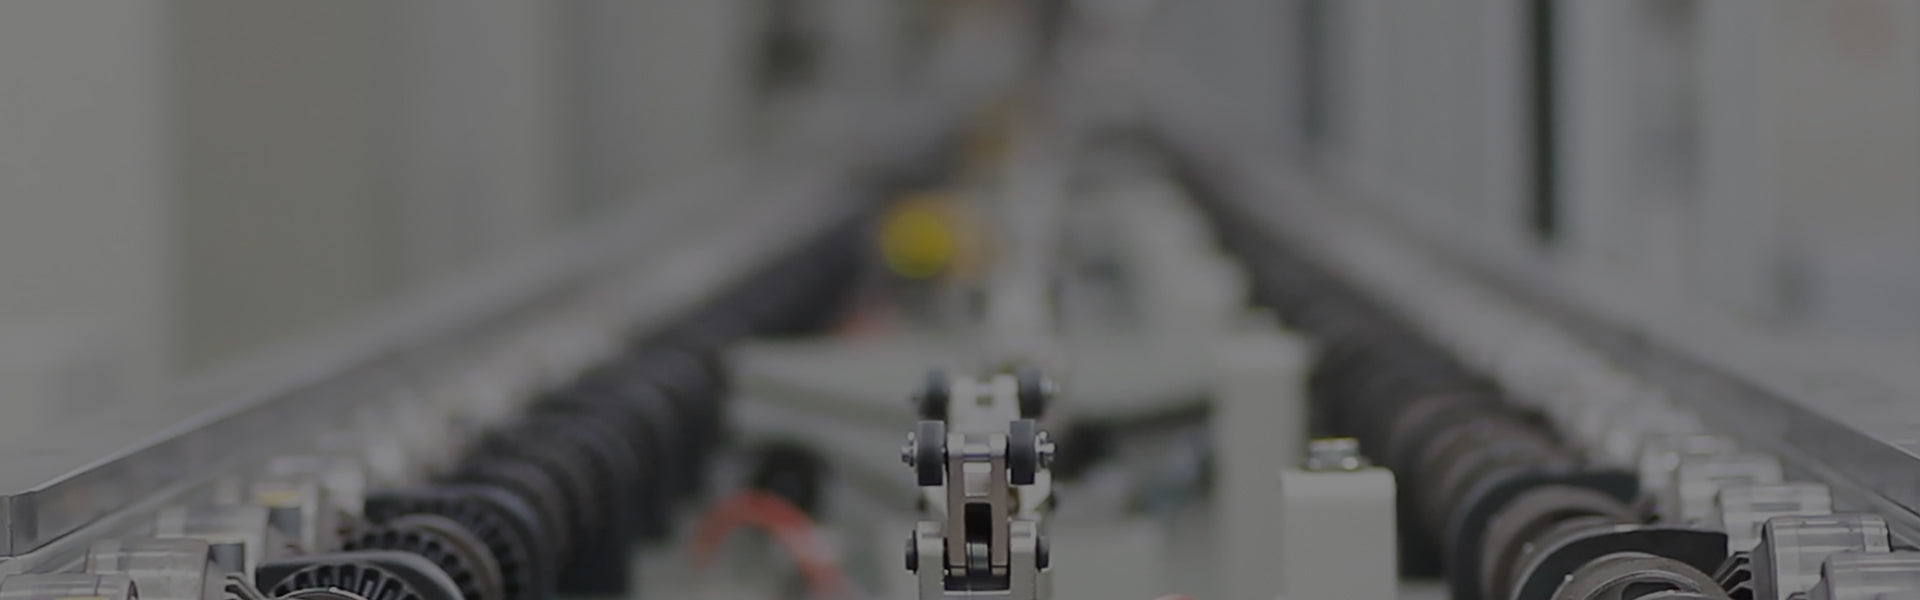 Máquina de corte a laser automática 8x4 com cabeça de laser raytool controlador cypcut